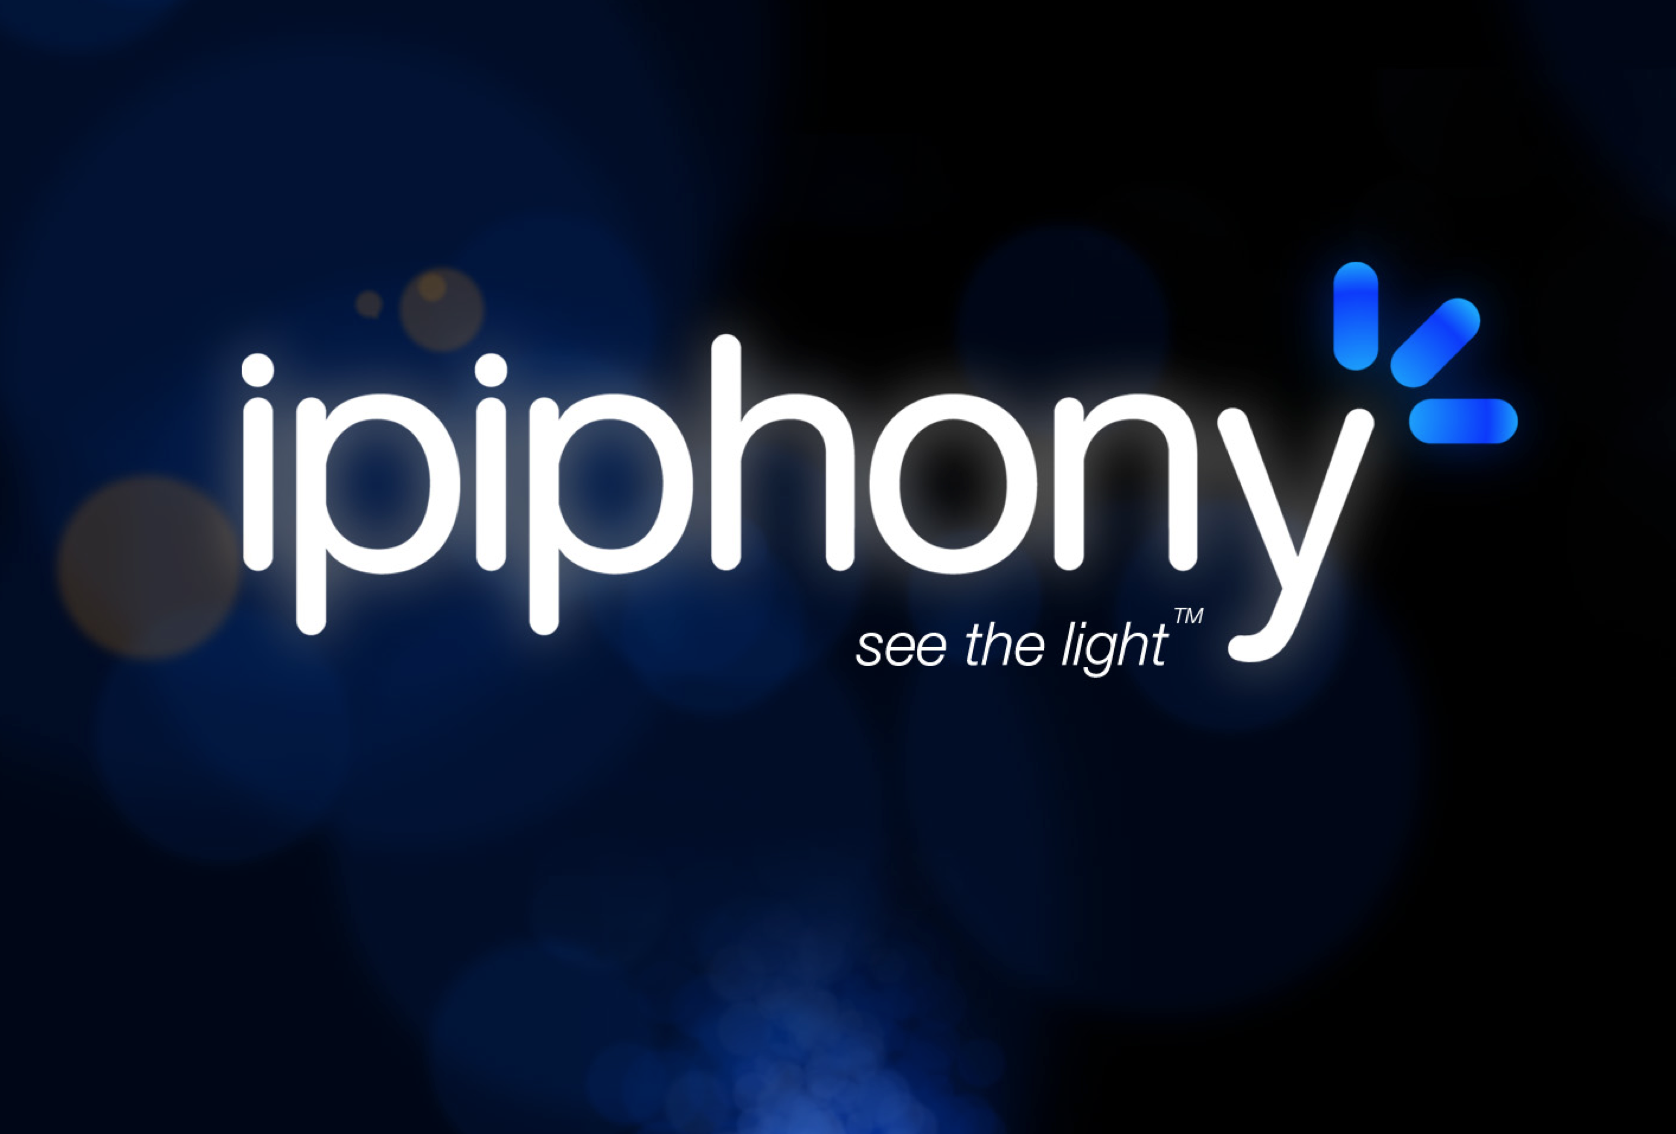 Ipiphony